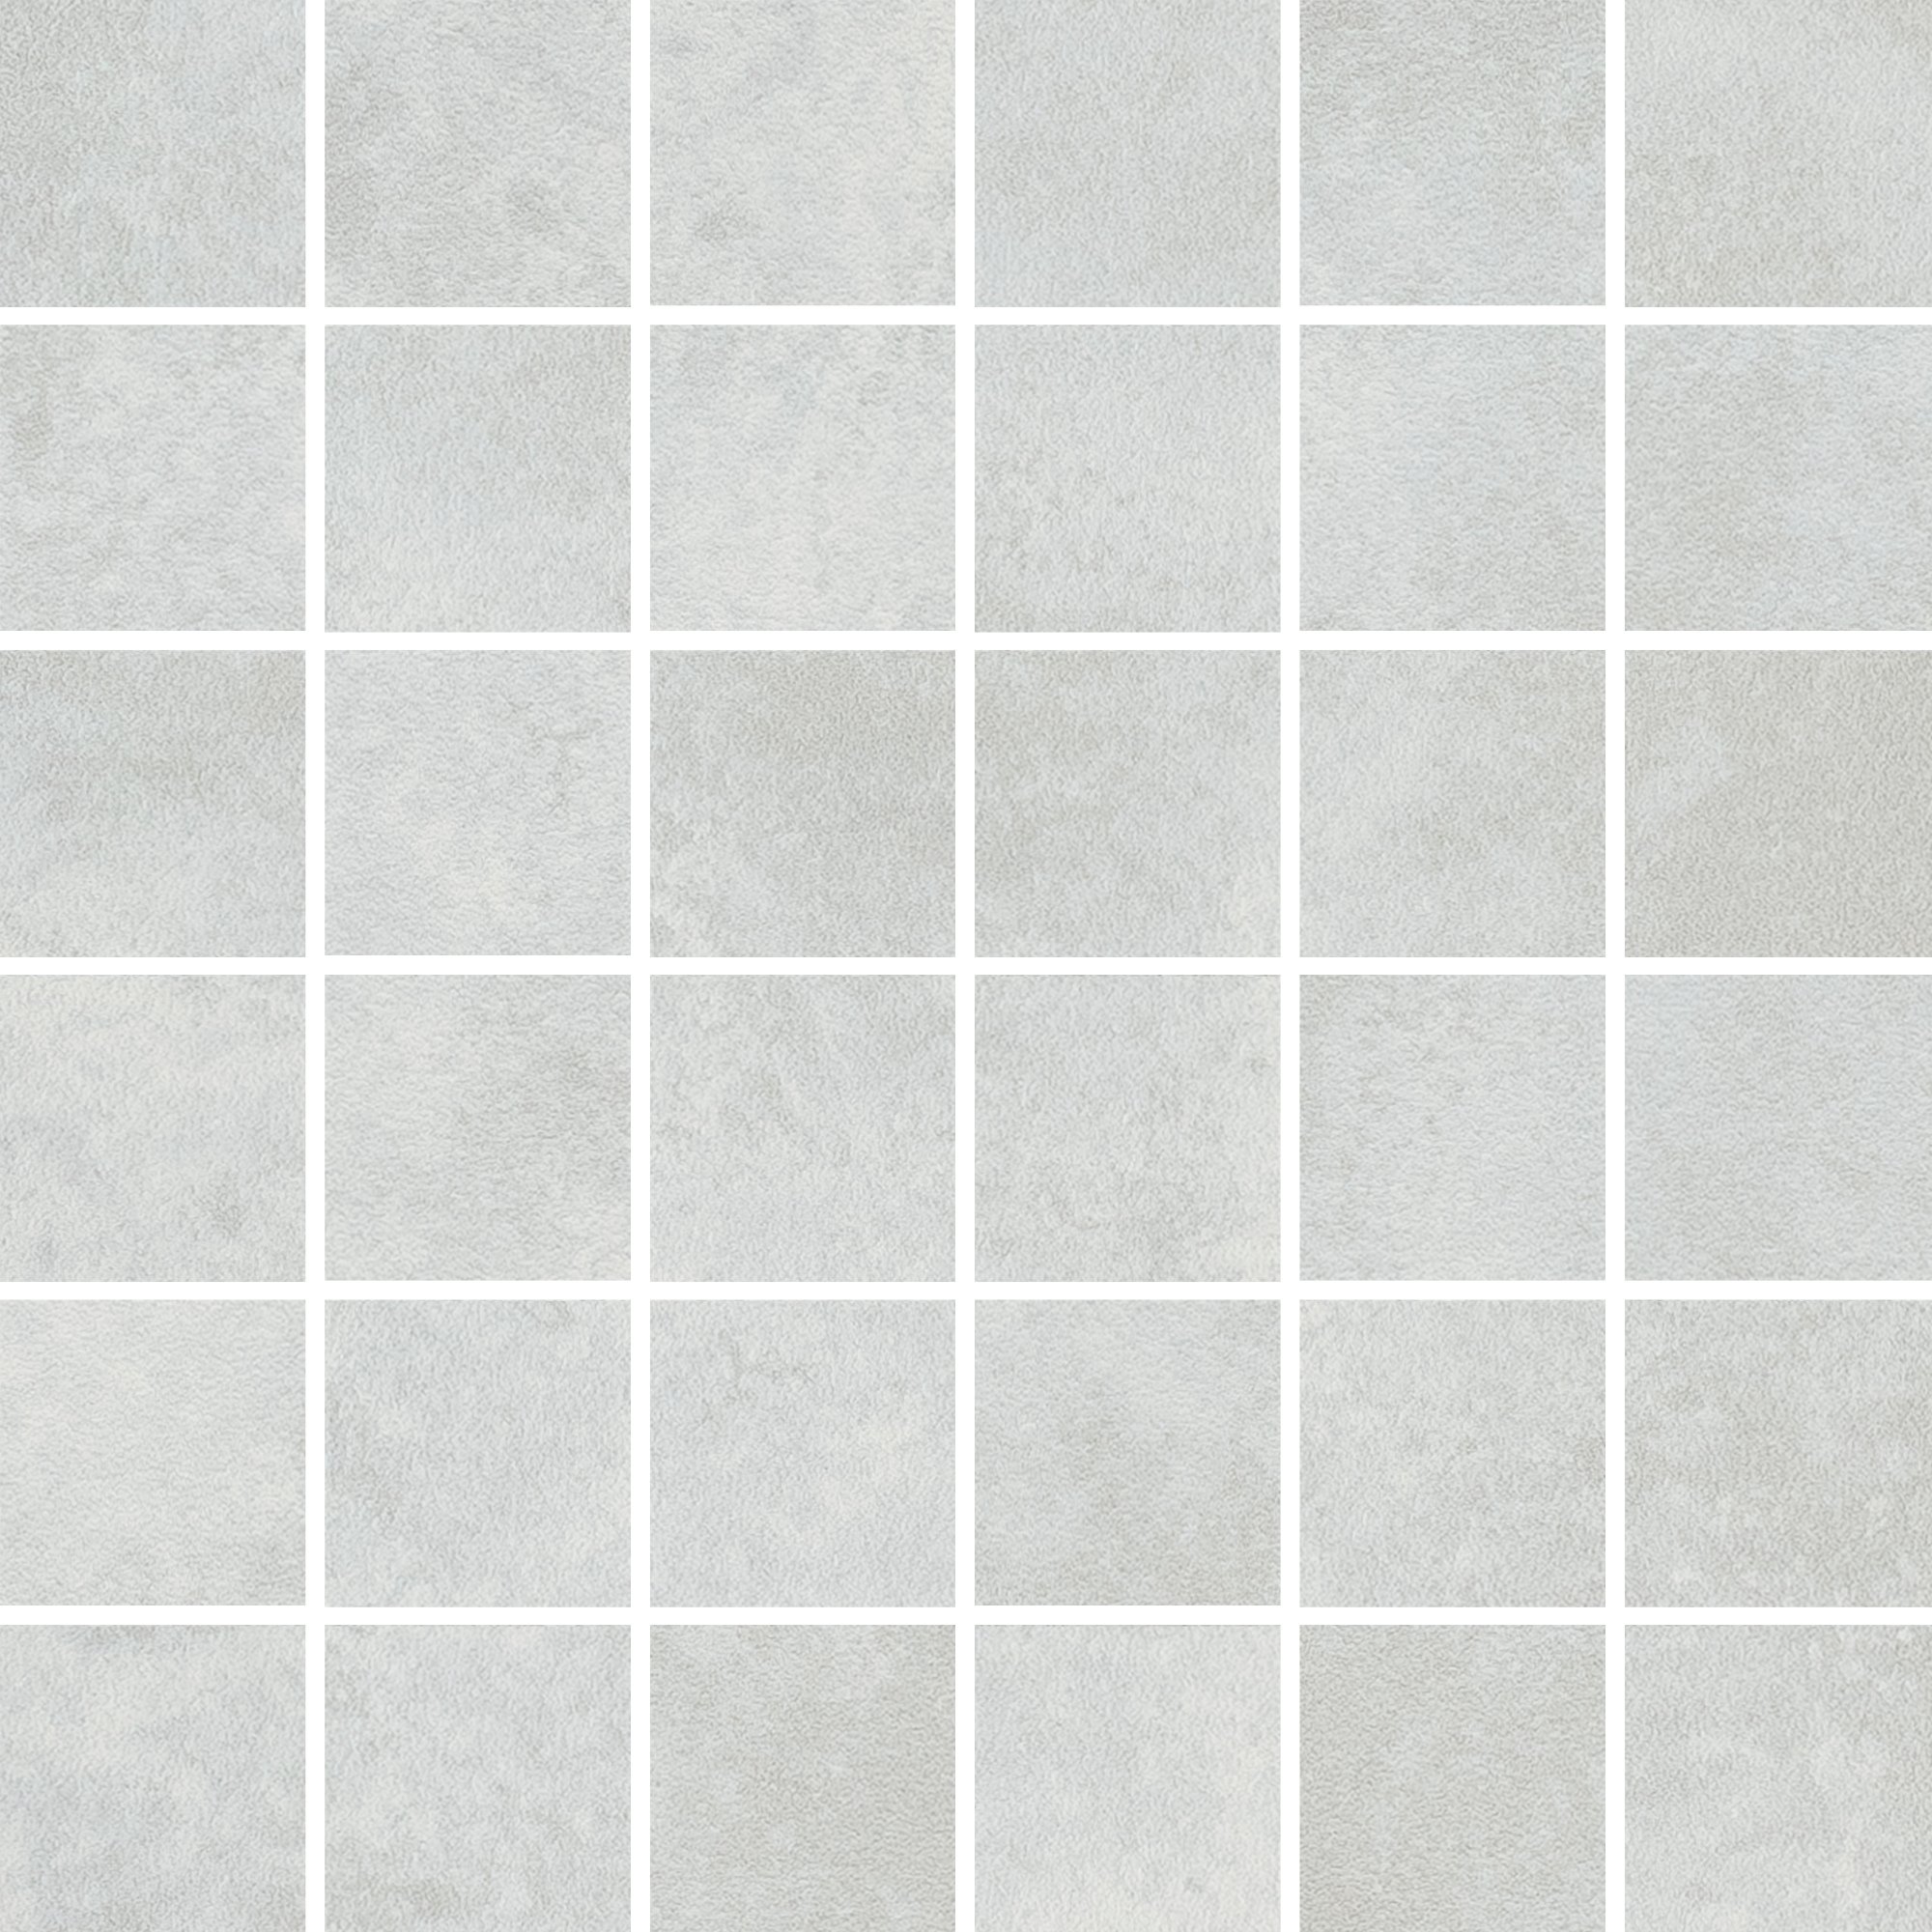 Apenino bianco mozaika lap - dlaždice mozaika 29,7x29,7 bílá lappovaná 152299